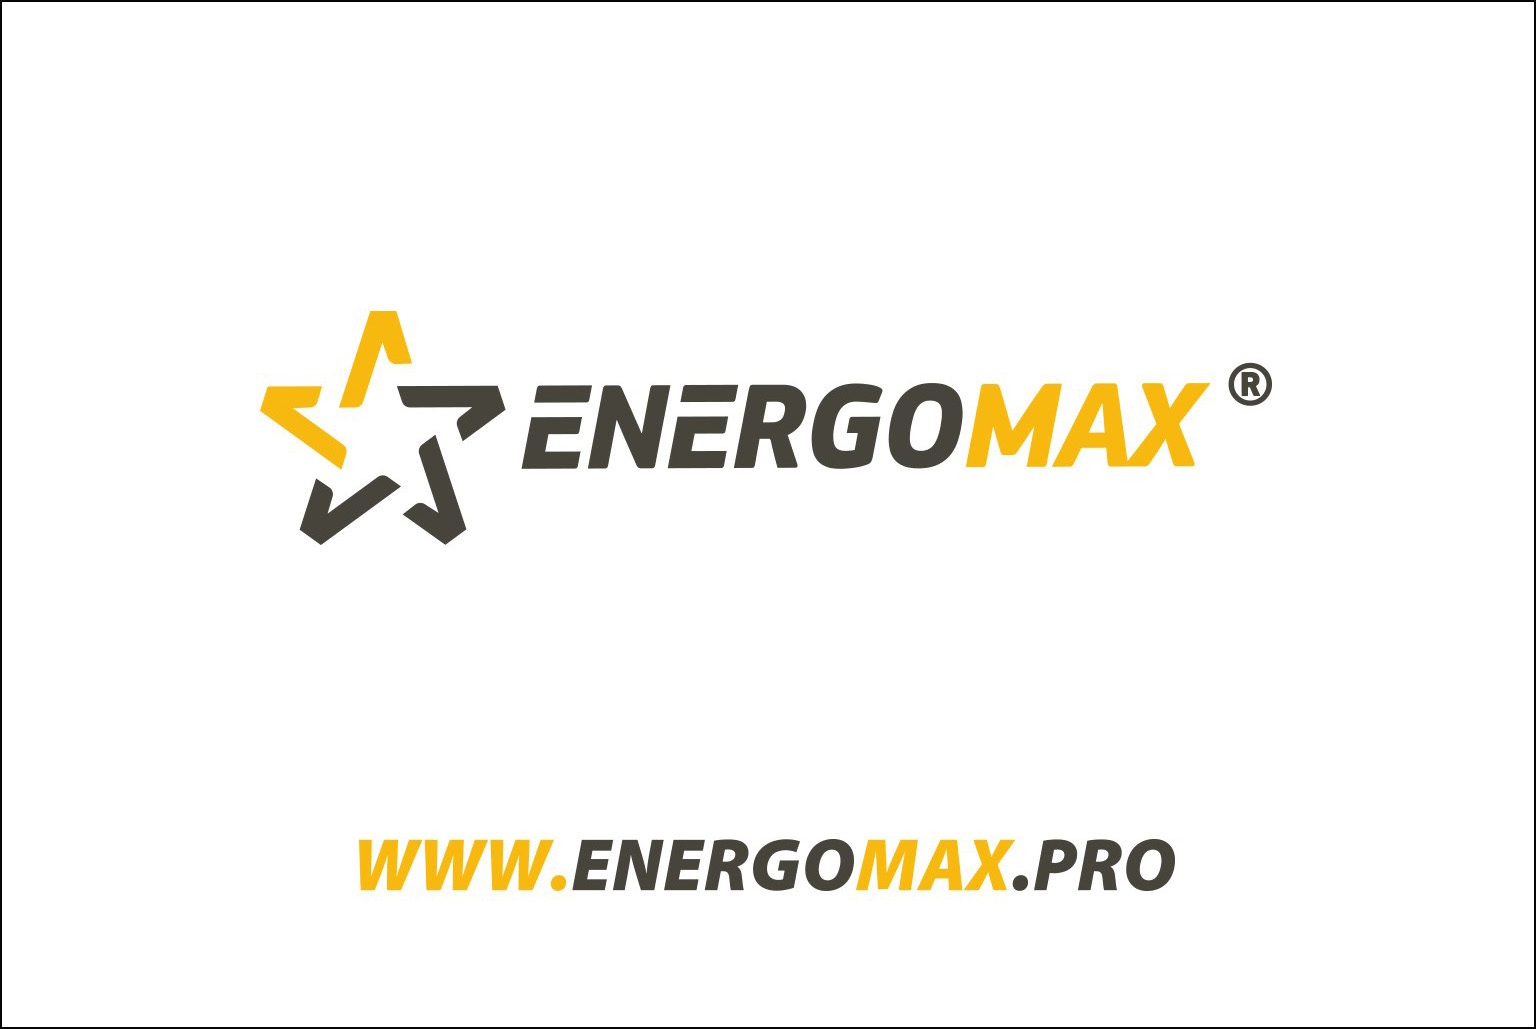 Website www.energomax.pro